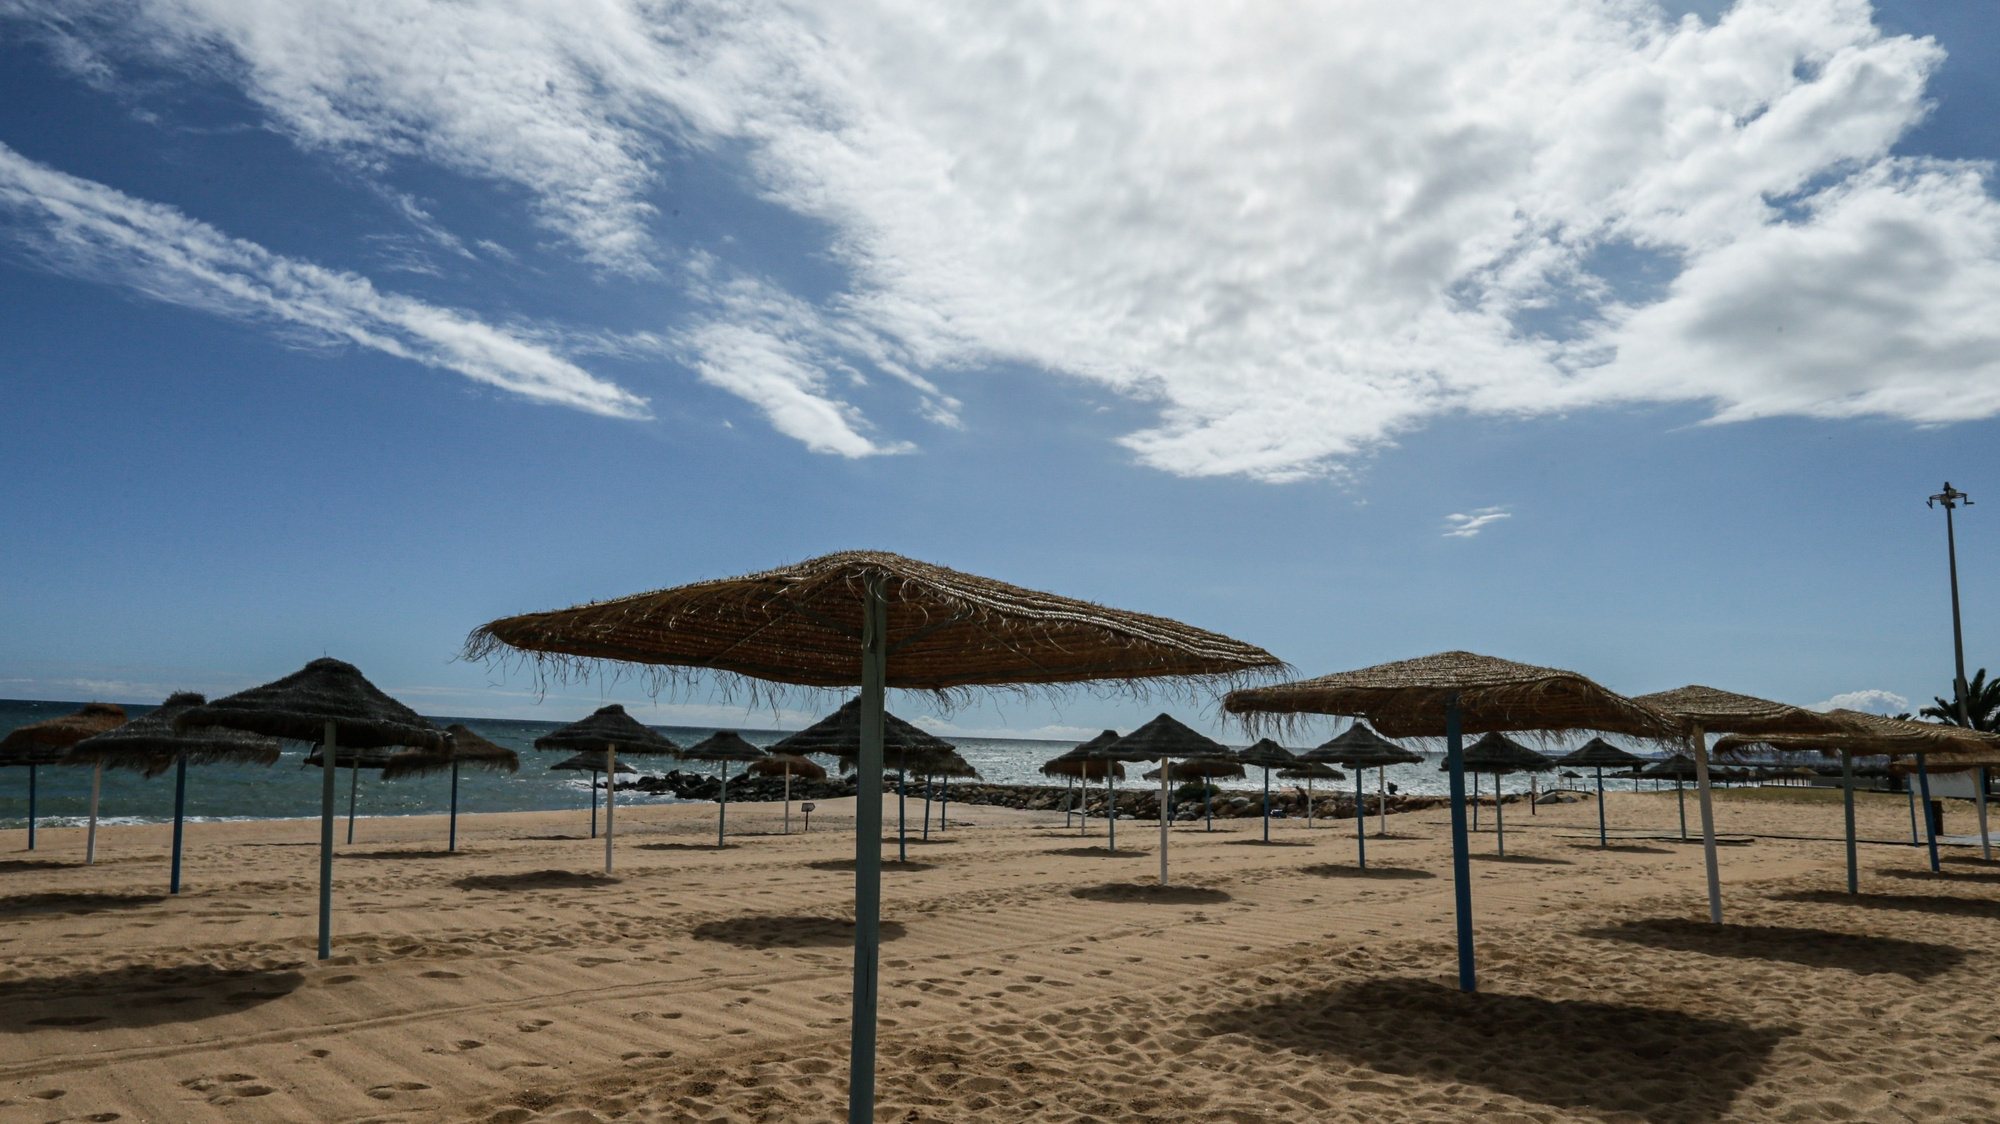 Concessionários da praia da Quarteira no Algarve, realizam os últimos preparativos e adaptam-se às novas imposições da Direção Geral da Saúde para o início da época balnear devido à pandemia provocada pela covid-19, em Quarteira,4 de junho de 2020. (ACOMPANHA TEXTO DE 5 DE JUNHO DE 2020 ). LUÍS FORRA/LUSA